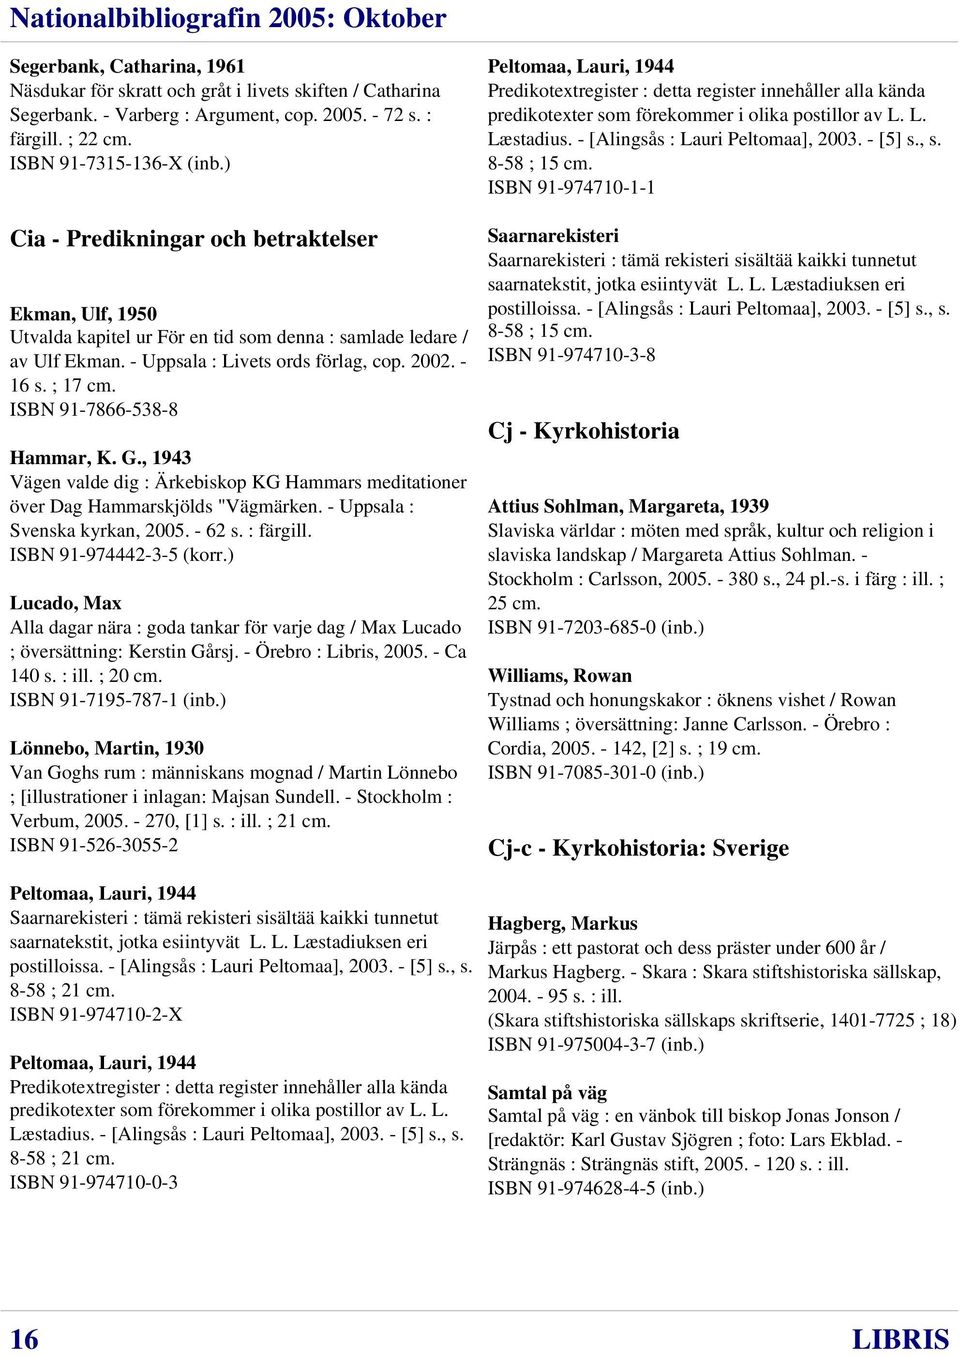 ISBN 91-7866-538-8 Hammar, K. G., 1943 Vägen valde dig : Ärkebiskop KG Hammars meditationer över Dag Hammarskjölds "Vägmärken. - Uppsala : Svenska kyrkan, 2005. - 62 s. : färgill.